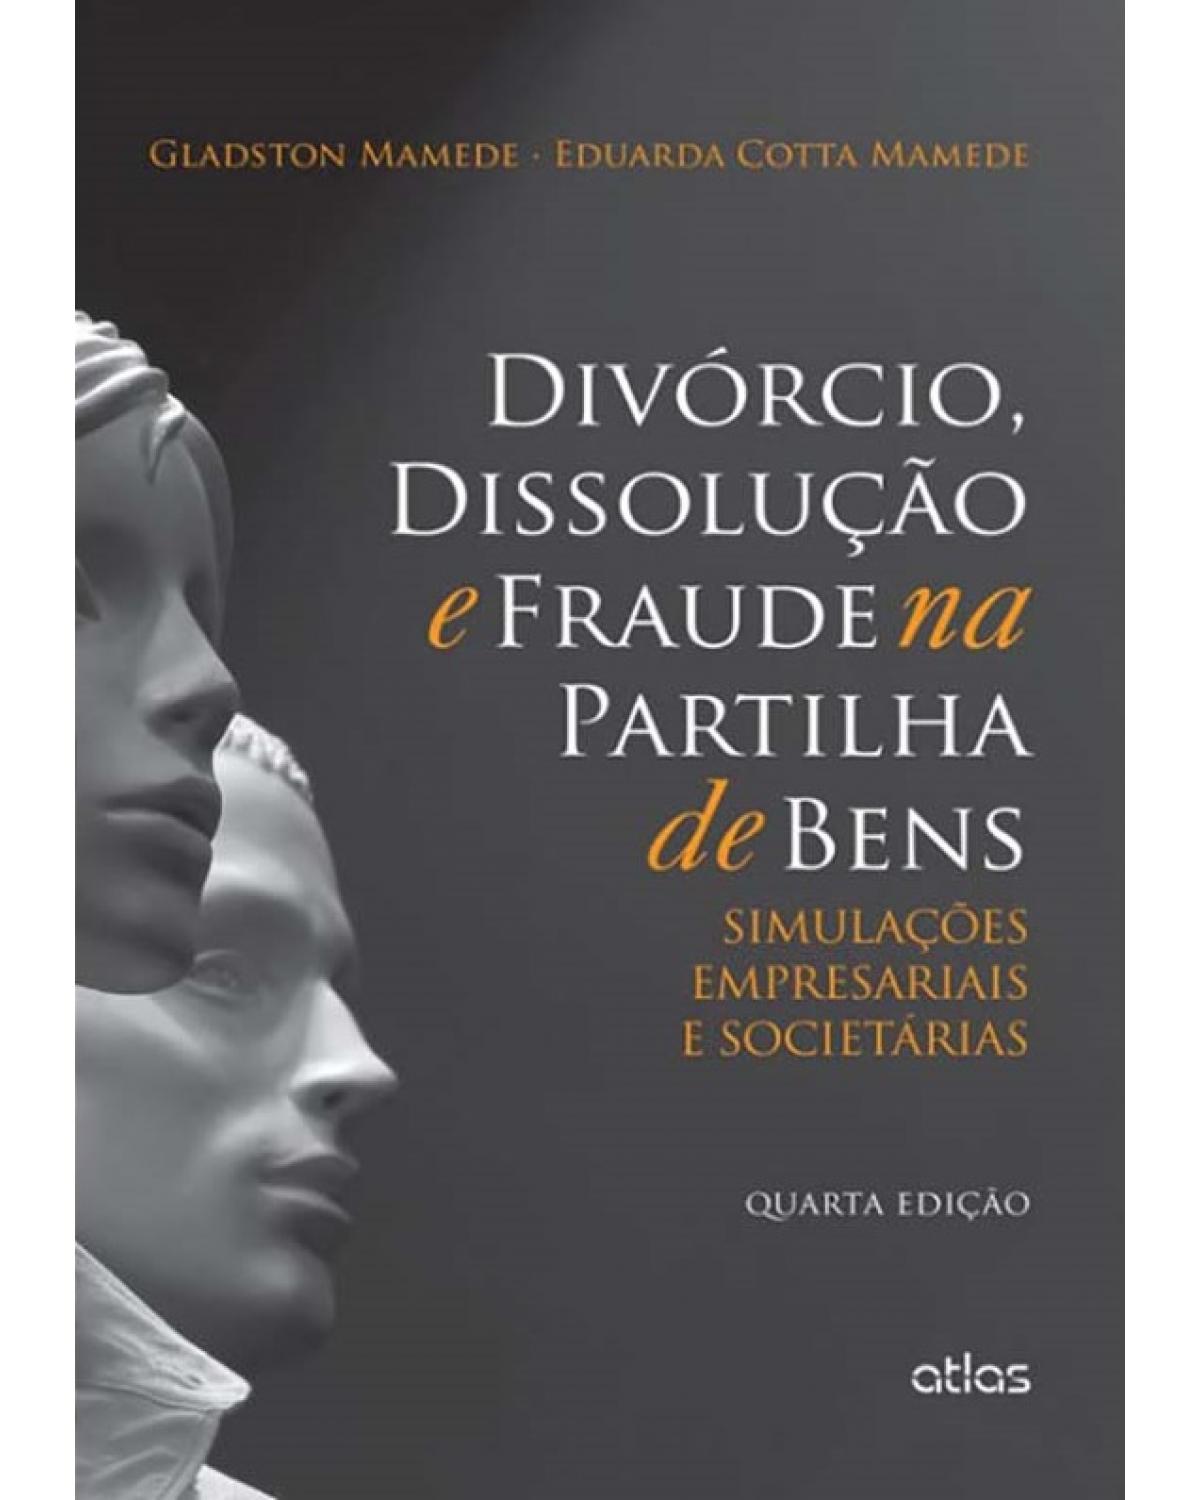 Divórcio, dissolução e fraude na partilha de bens - Simulações empresariais e societárias - 4ª Edição | 2014